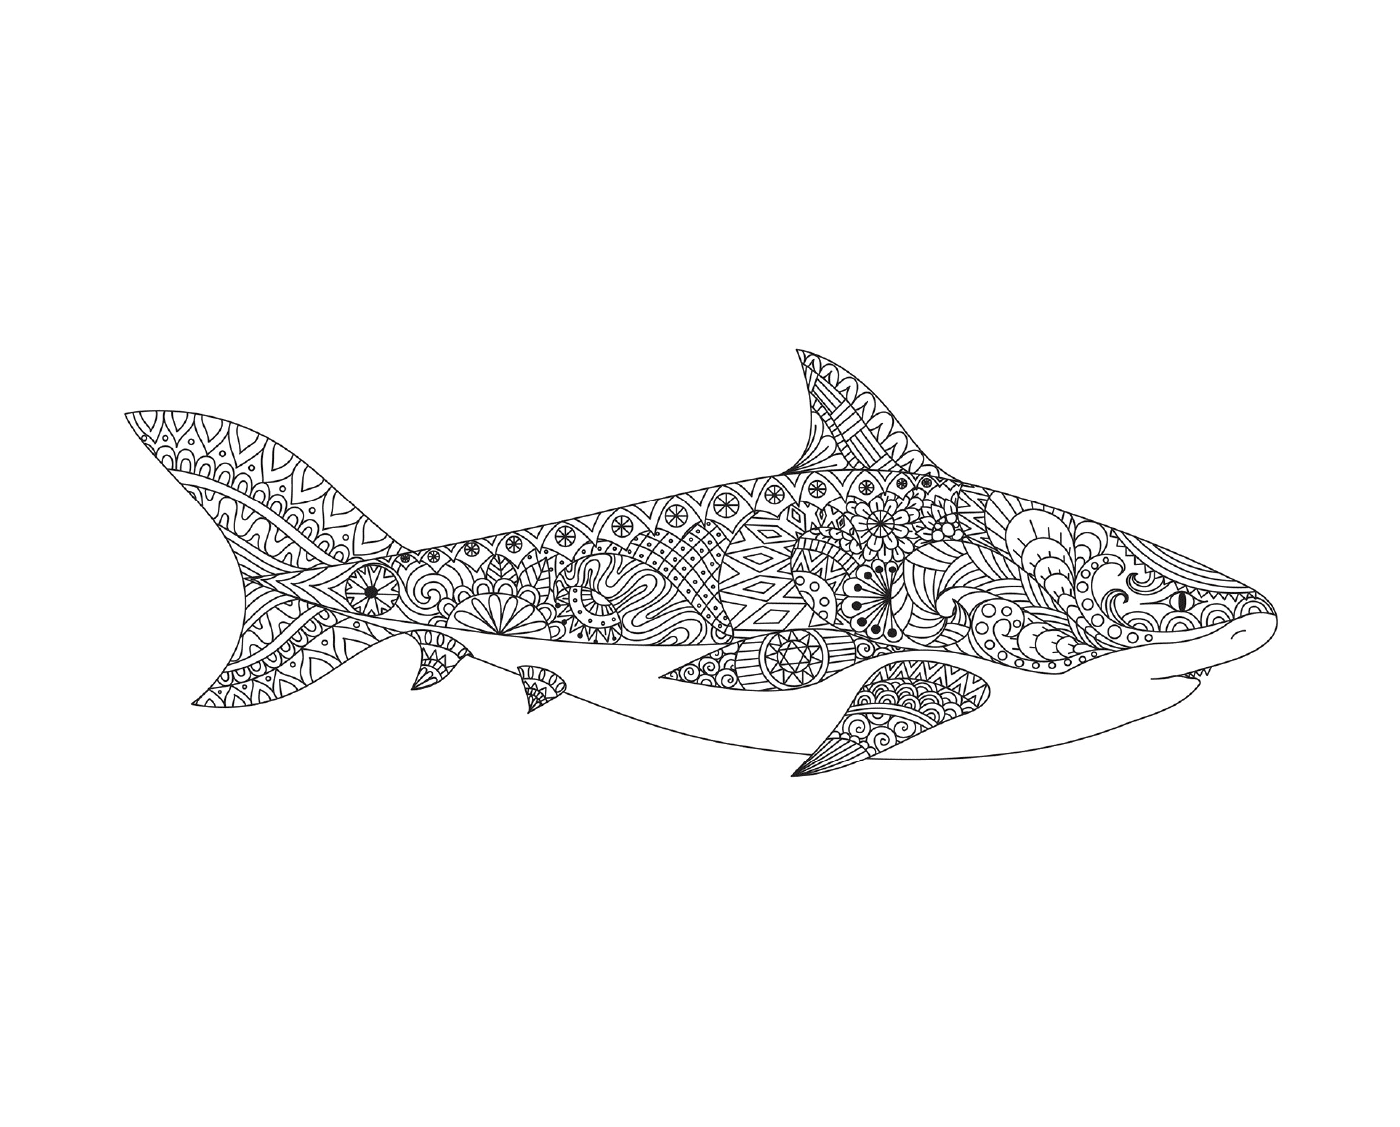  татуированный образ взрослой акулы с открытым ртом 